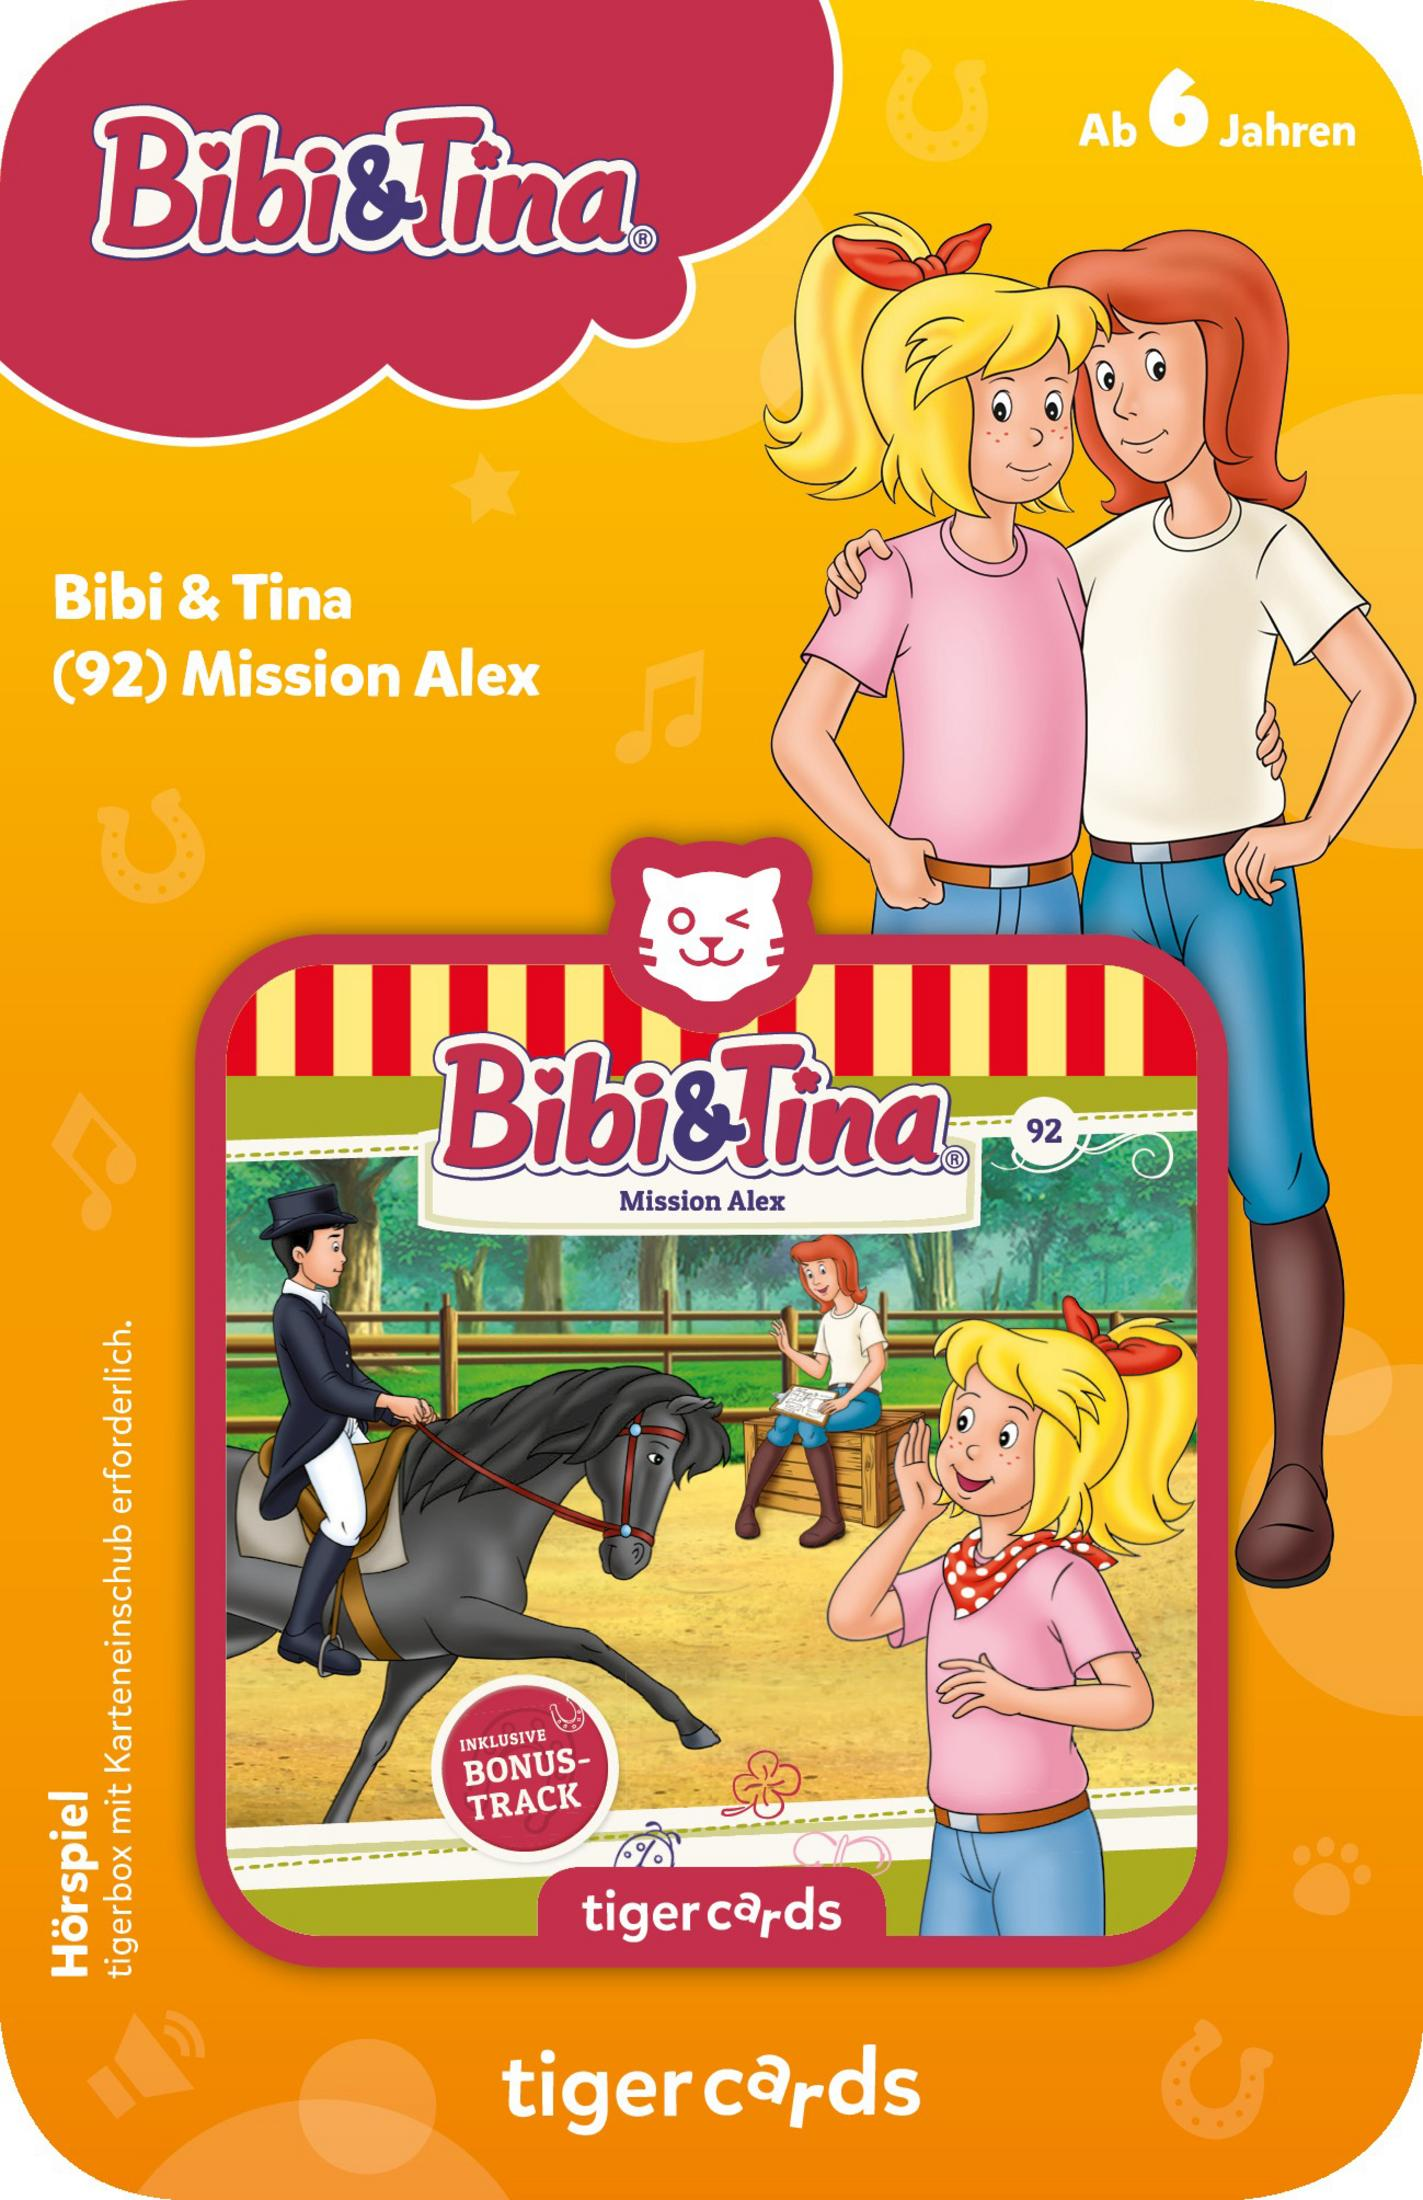 BIBI & Tigercard, MISSION 4139 Mehrfarbig TINA ALEX TIGERMEDIA TIGERCARD